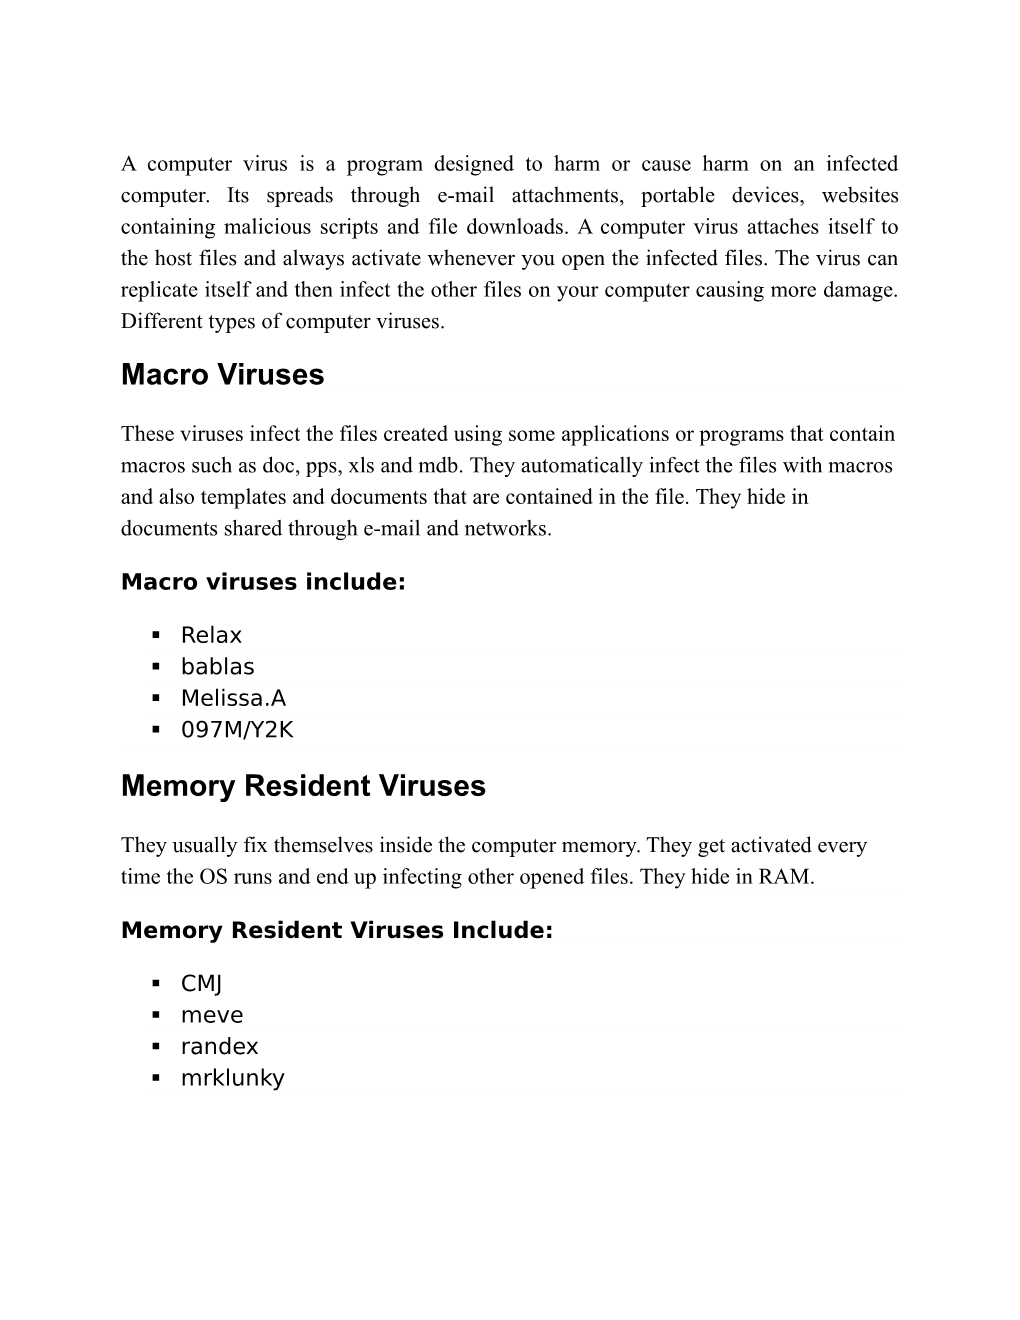 Macro Viruses Memory Resident Viruses